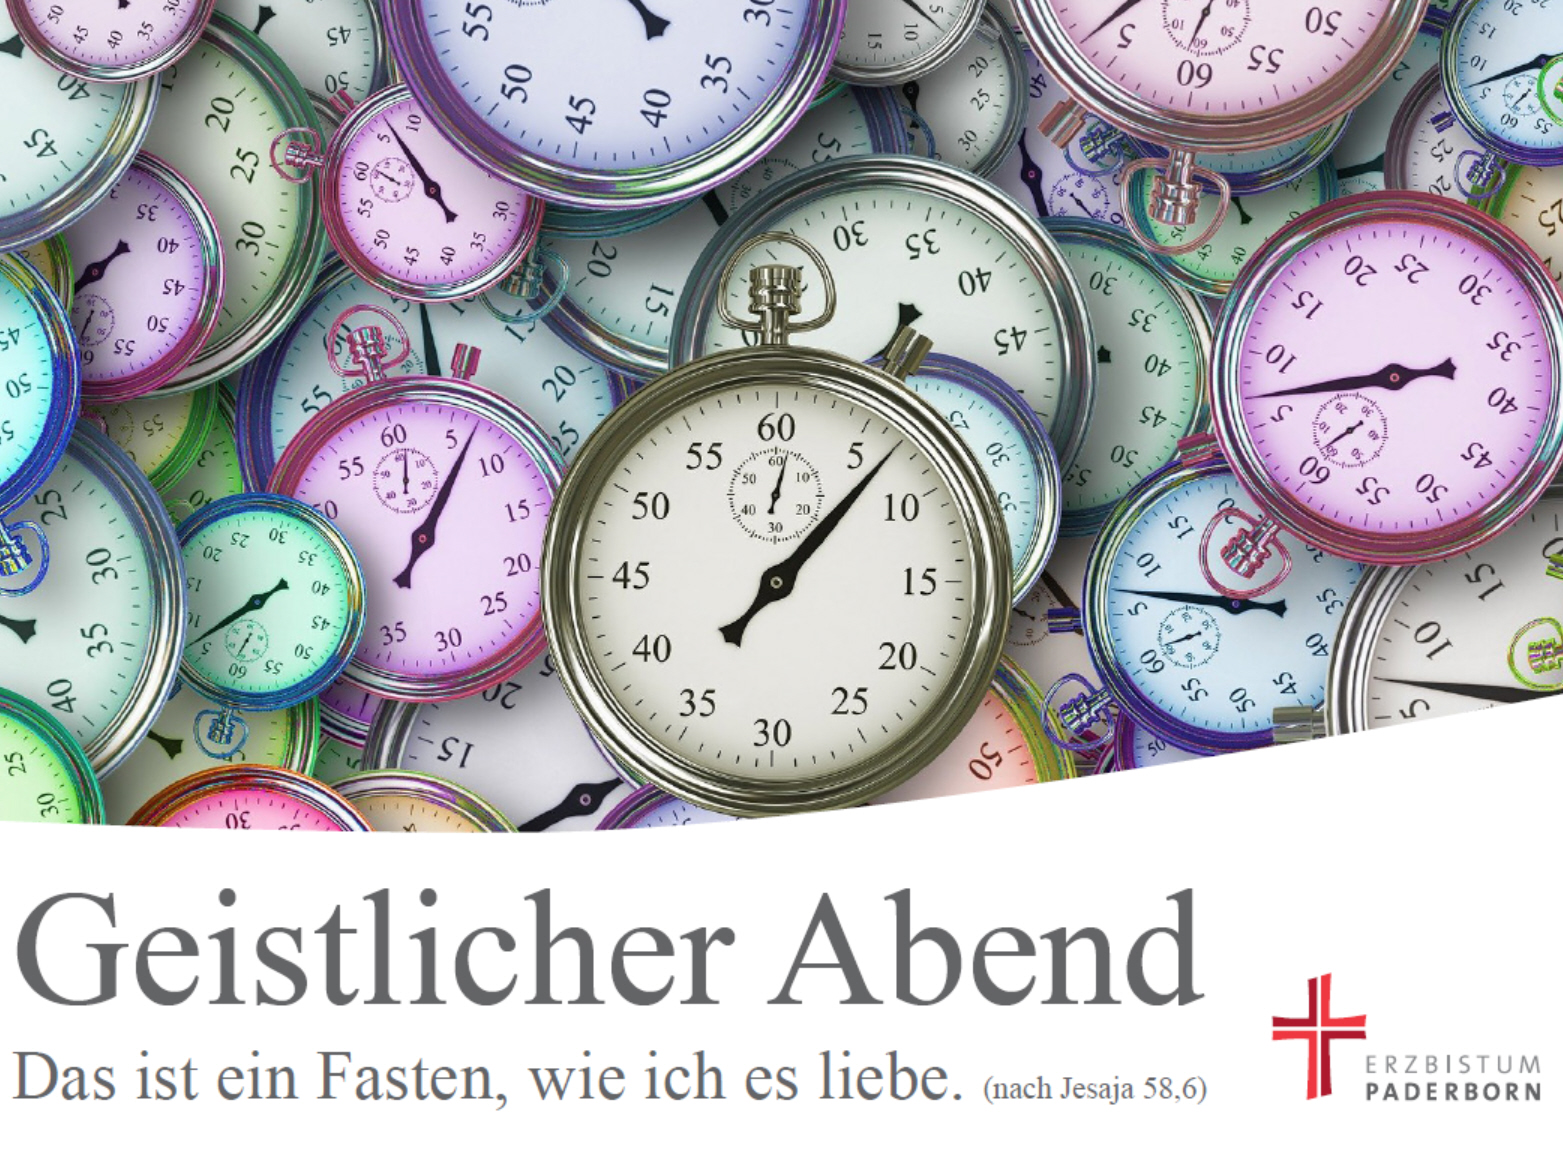 Read more about the article Geistlicher Abend in der Fastenzeit